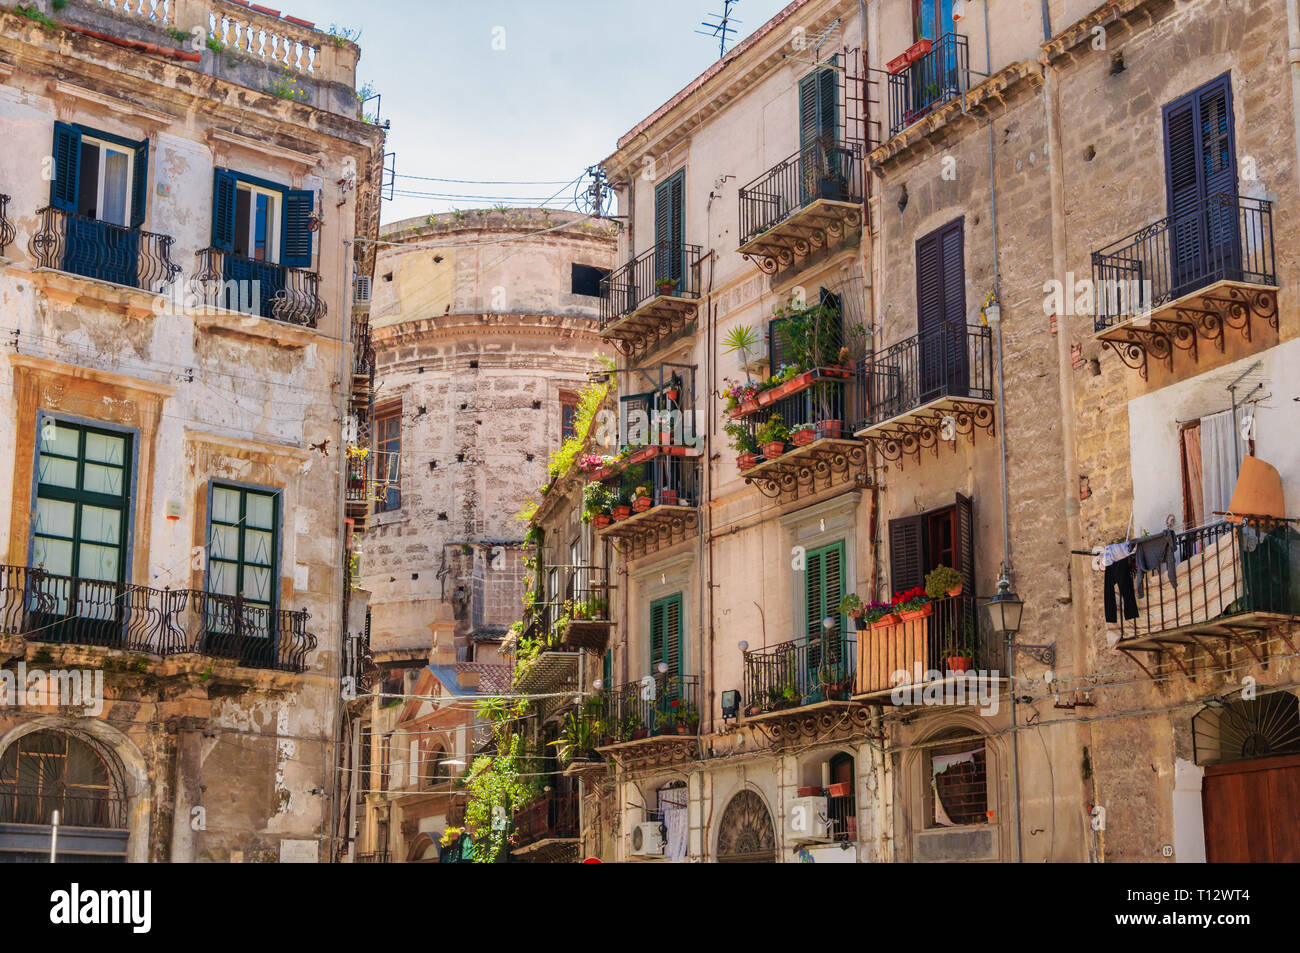 Palermo, Sicilia, Italia: Street View di vecchi edifici nella parte storica della città Foto Stock